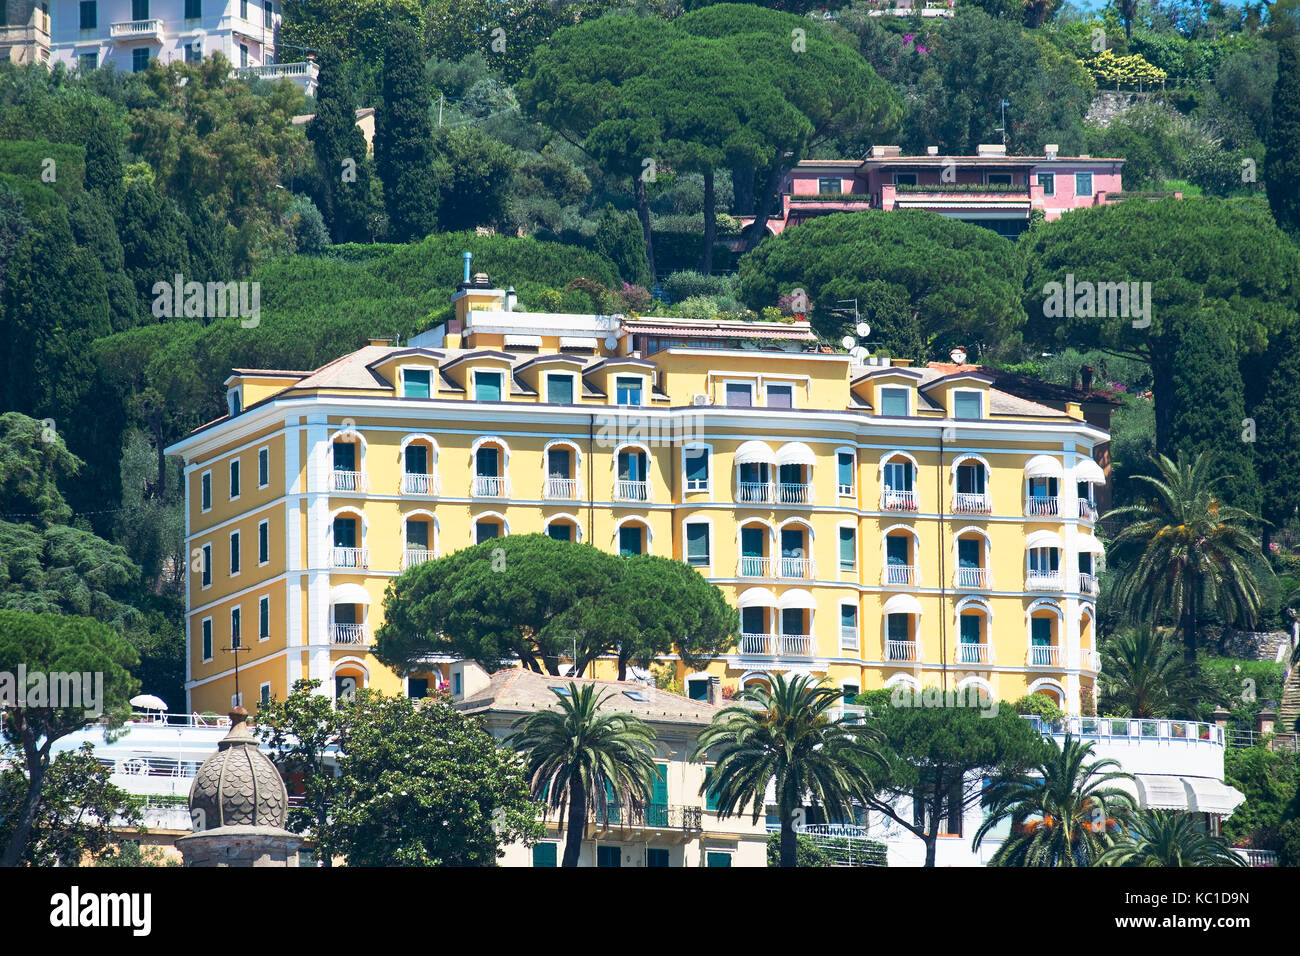 Hotel de lujo en Santa Margherita Ligure, Italia, Foto de stock